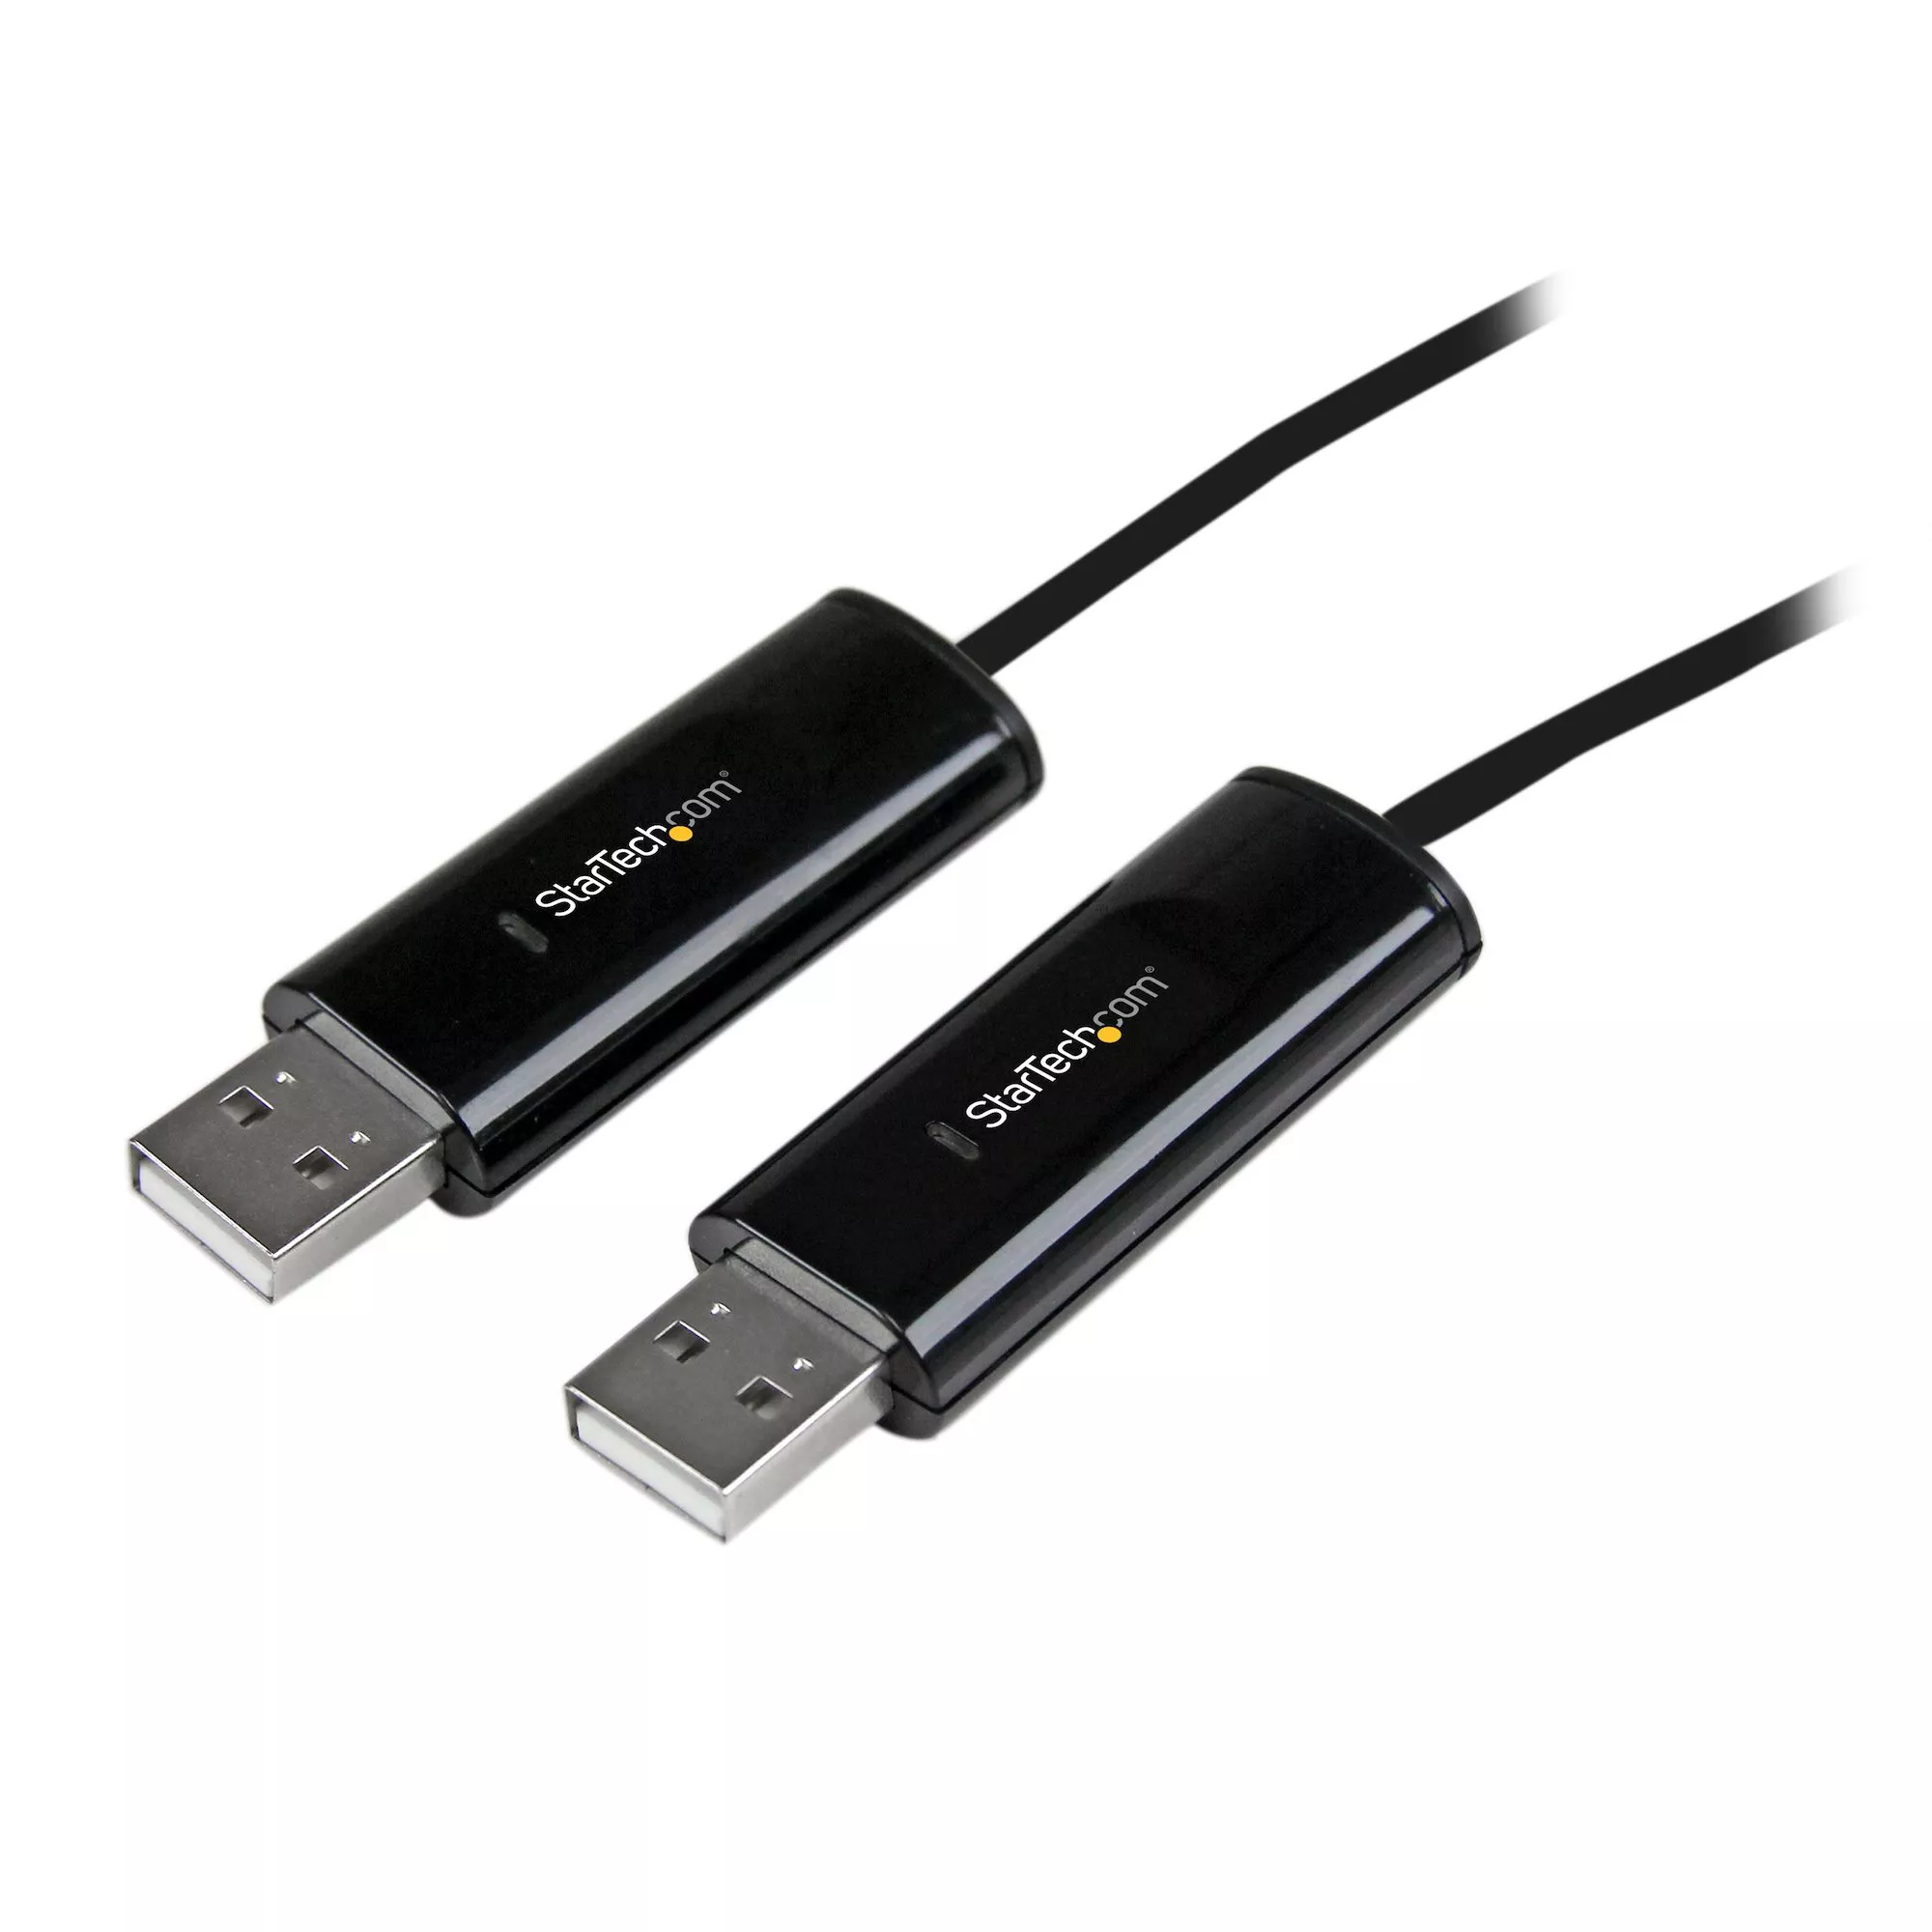 Achat StarTech.com Câble KM USB 2.0 avec transfert de données sur hello RSE